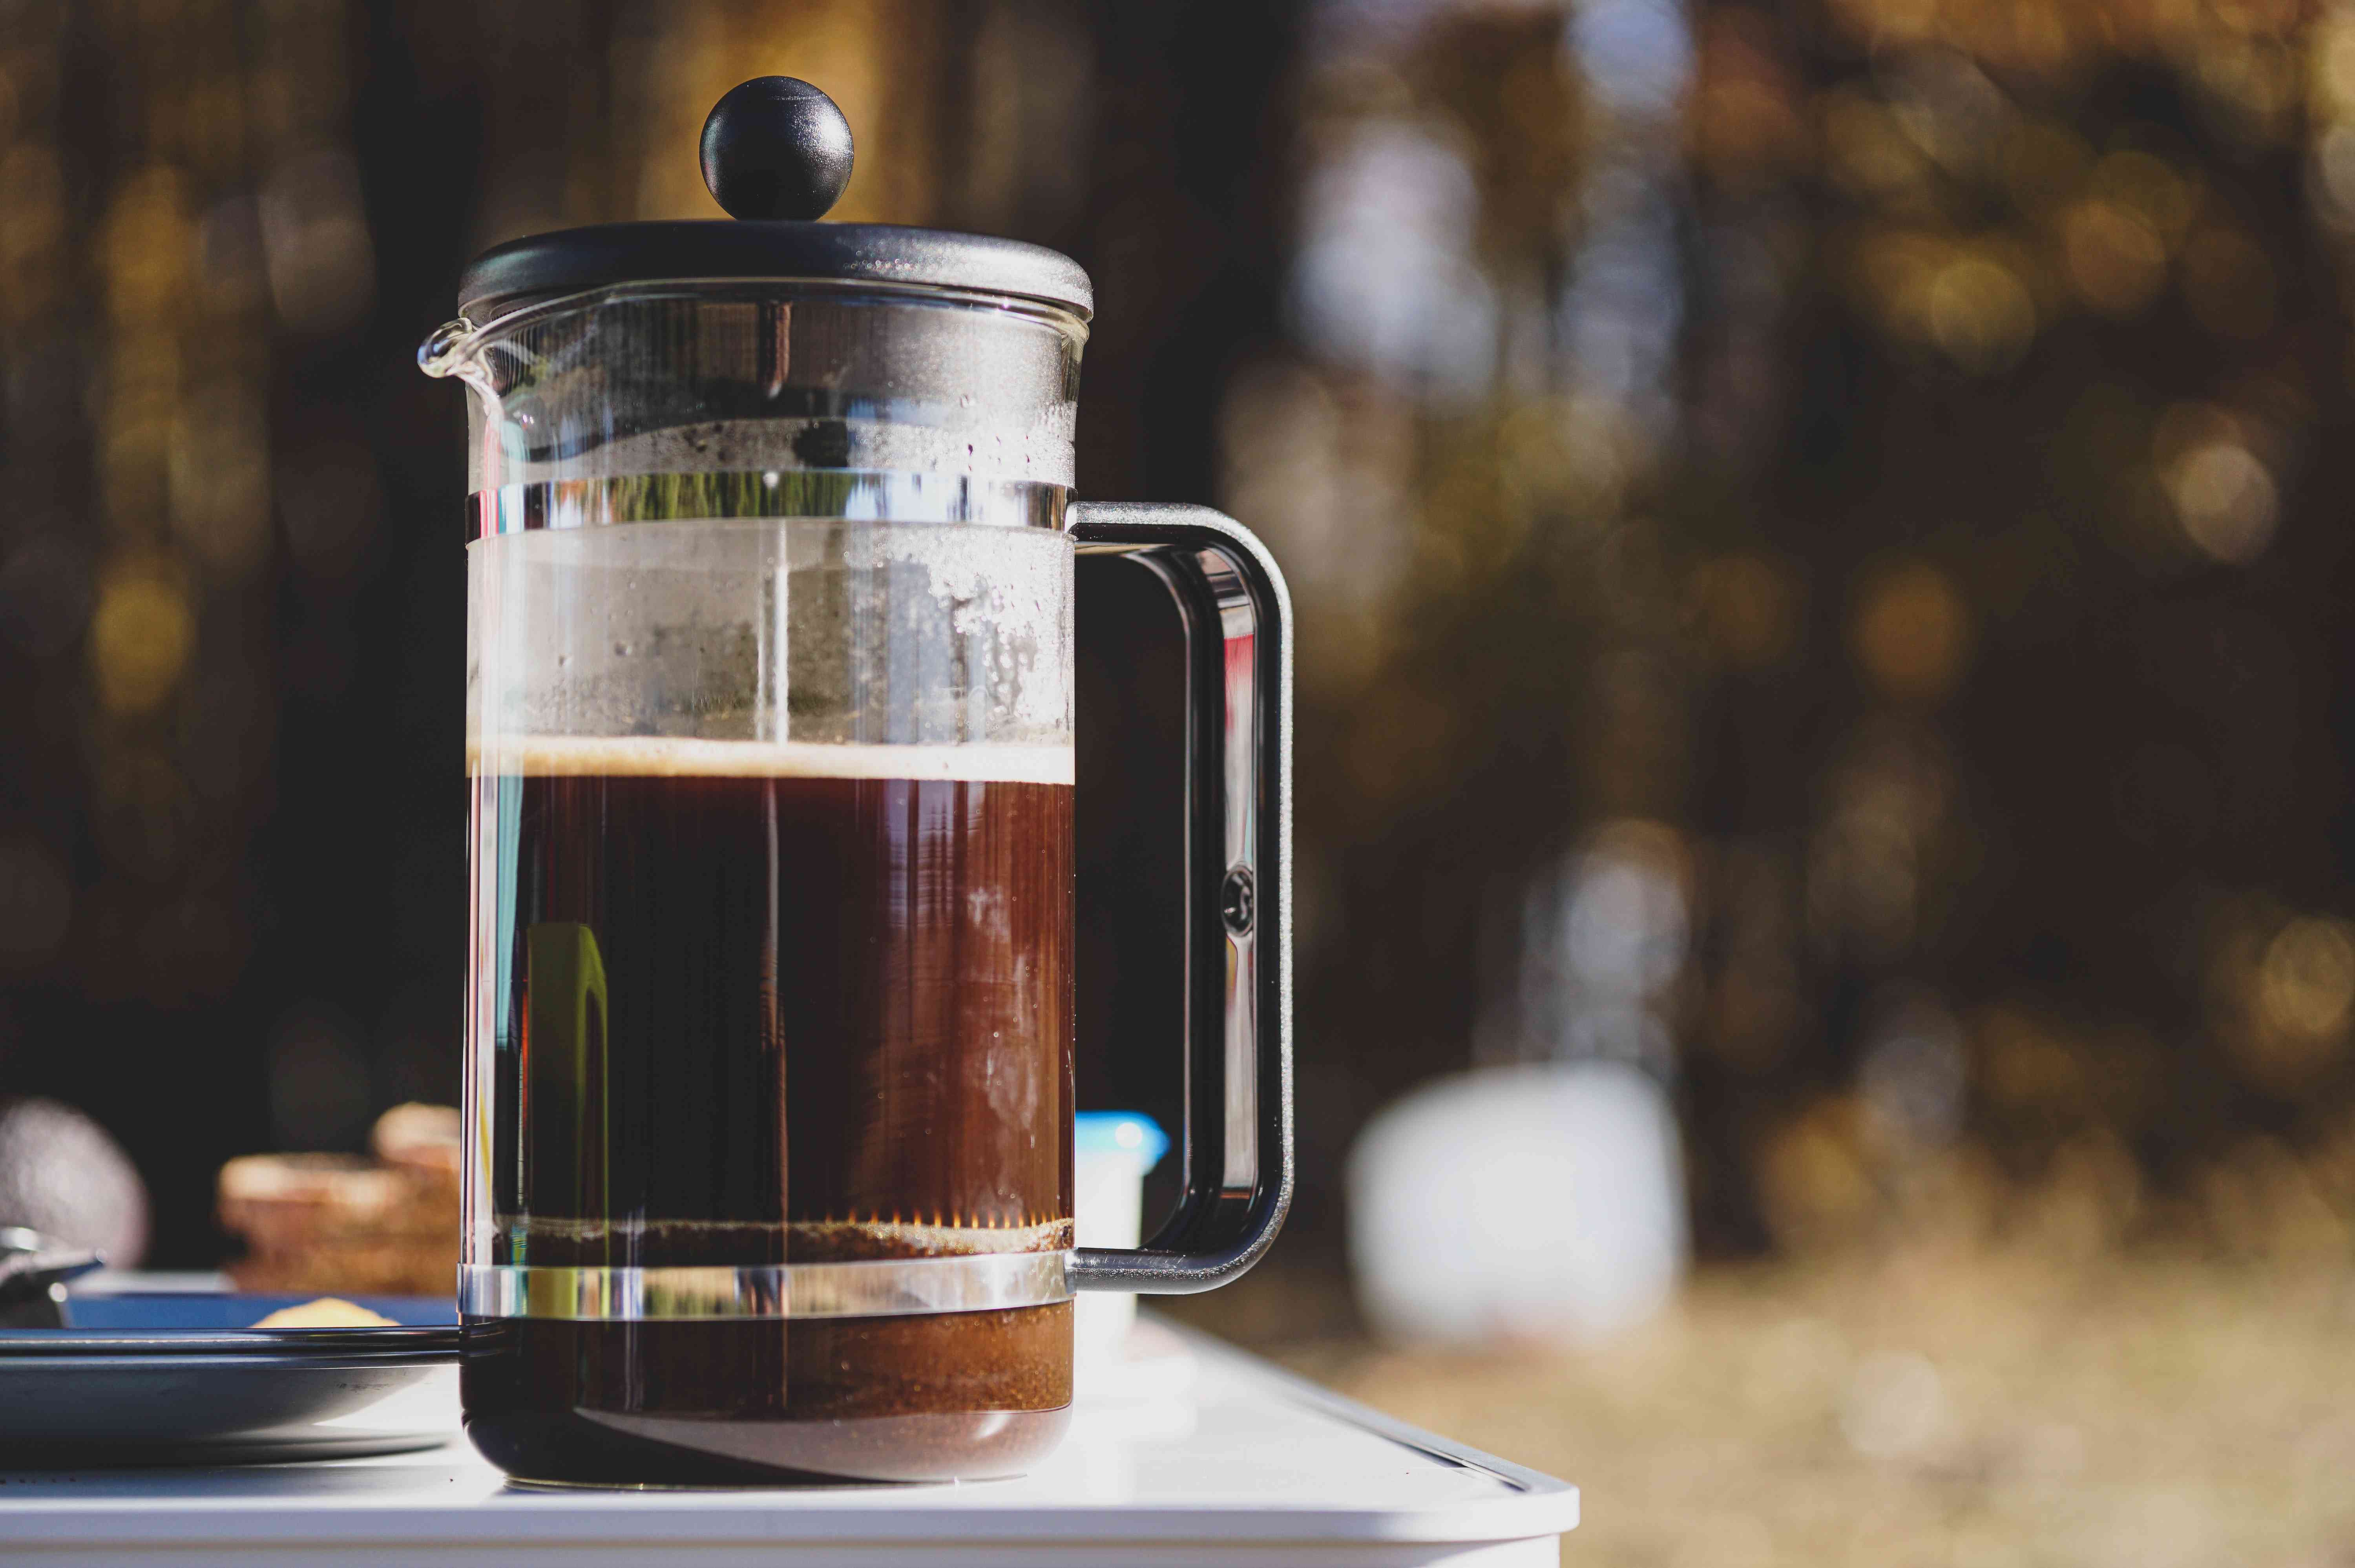 Alat pembuat kopi portable seperti french press bisa kamu jadikan pilihan kado untuk suami pecinta kopi